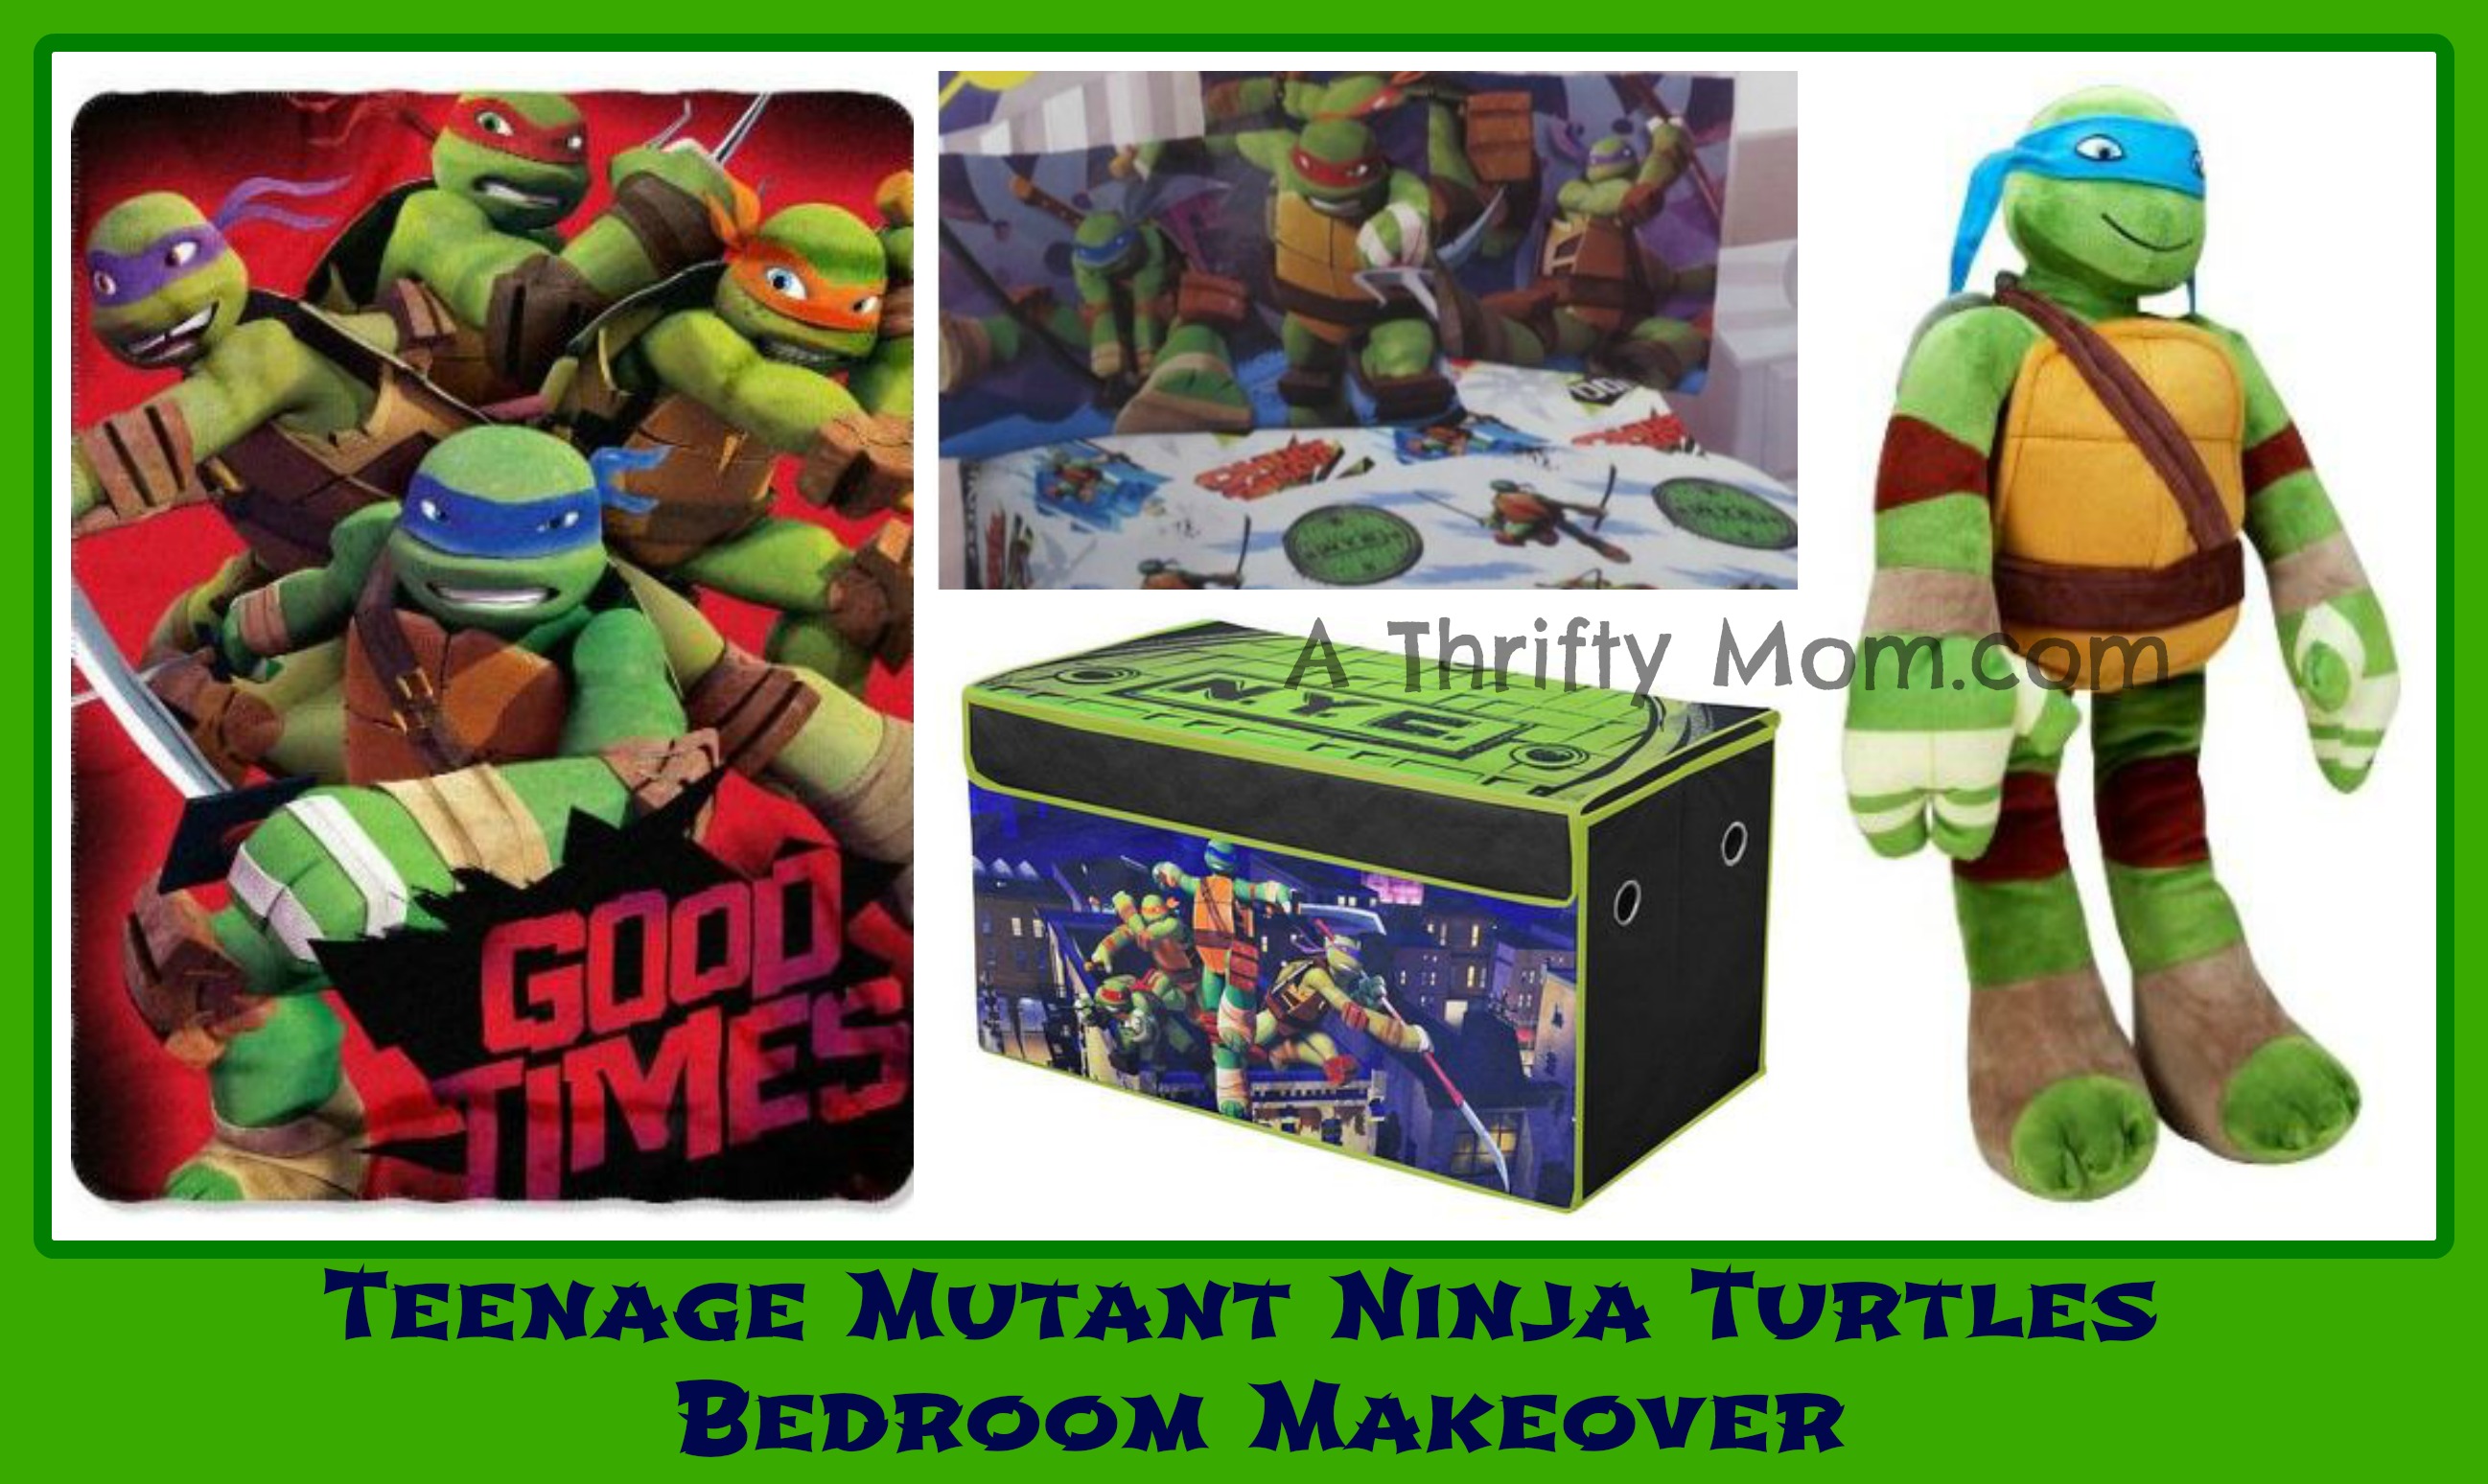 Teenage Mutant Ninja Turtles Bedroom Makeover